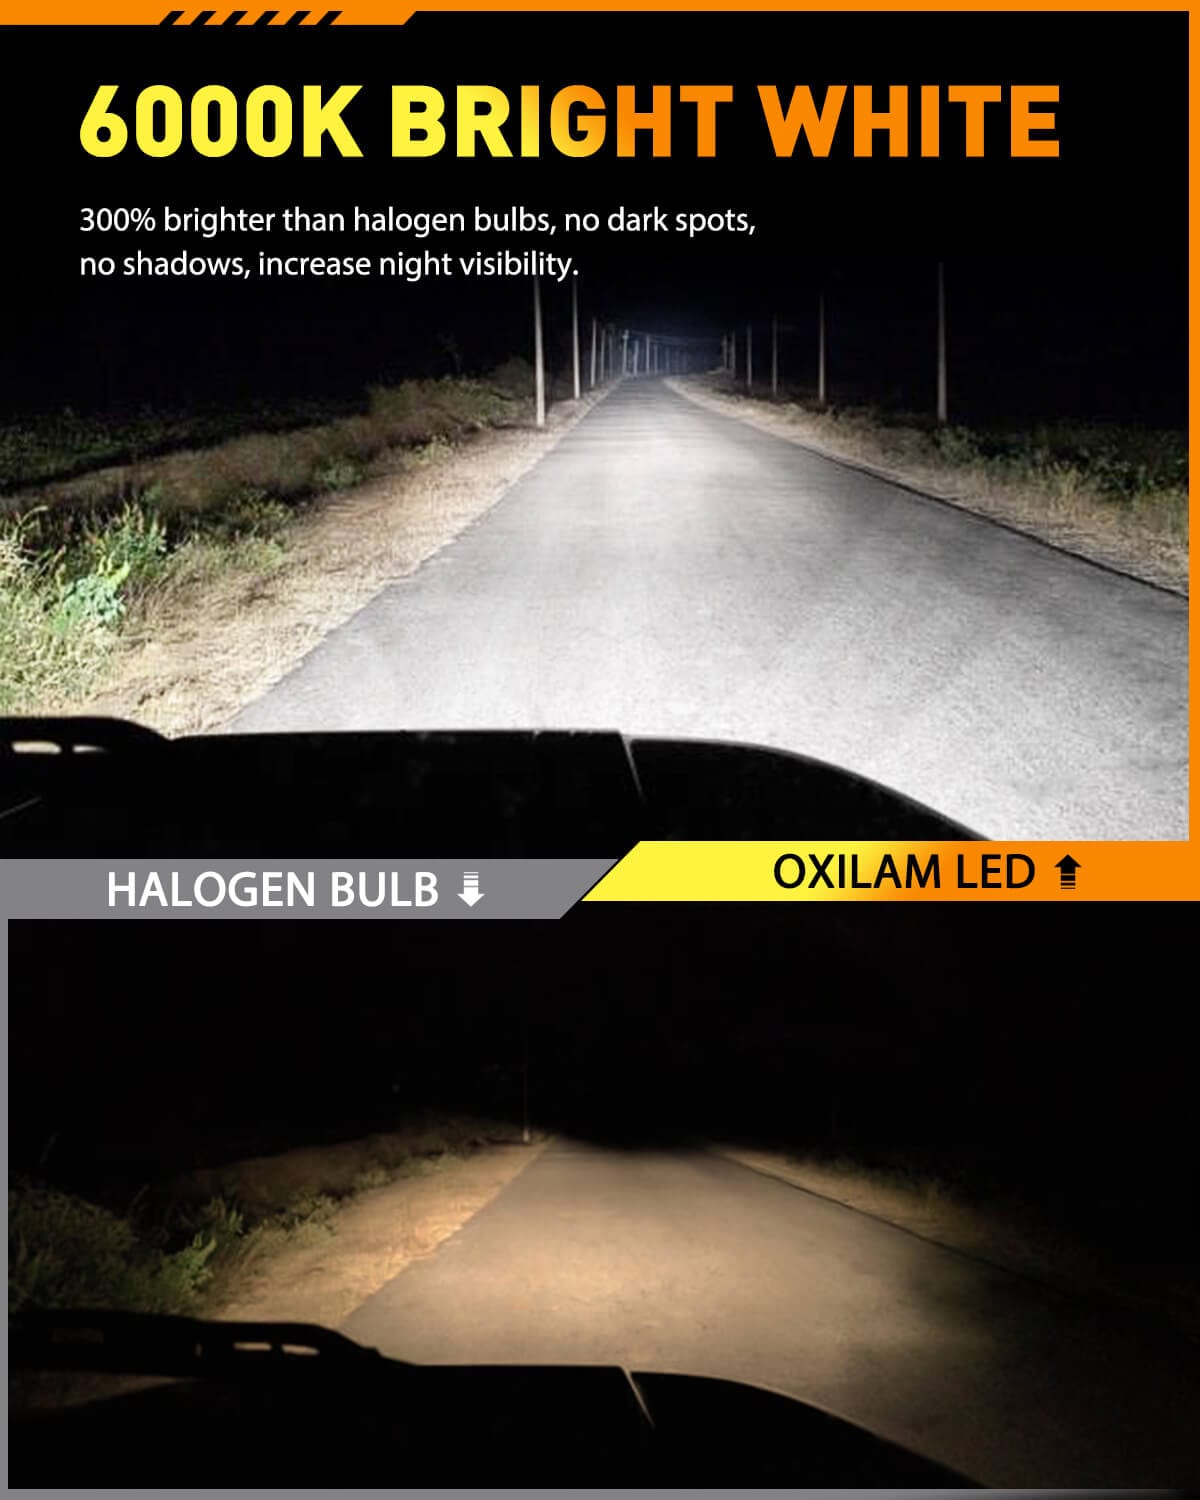 osram H4 LED XLZ CLASSIC 2.0 12V P43t 6000K COOL WHITE Car Headlight AUTO  lamp